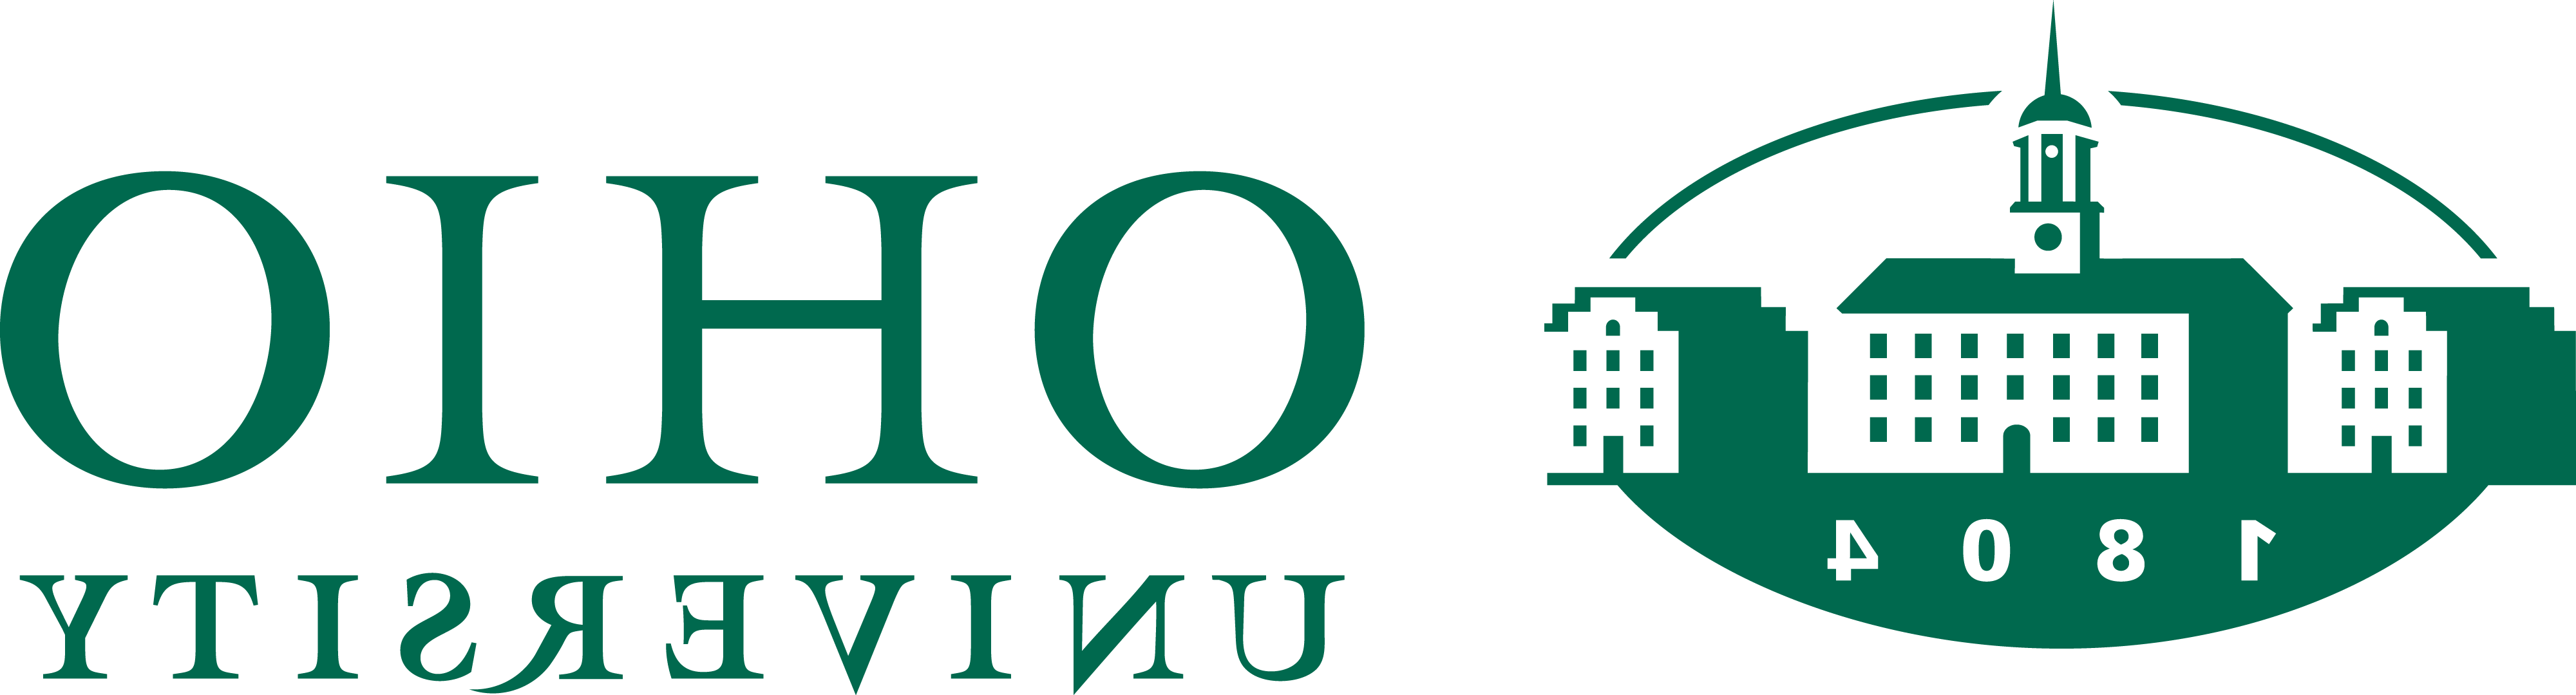 Ohio University Primary Formal Logo